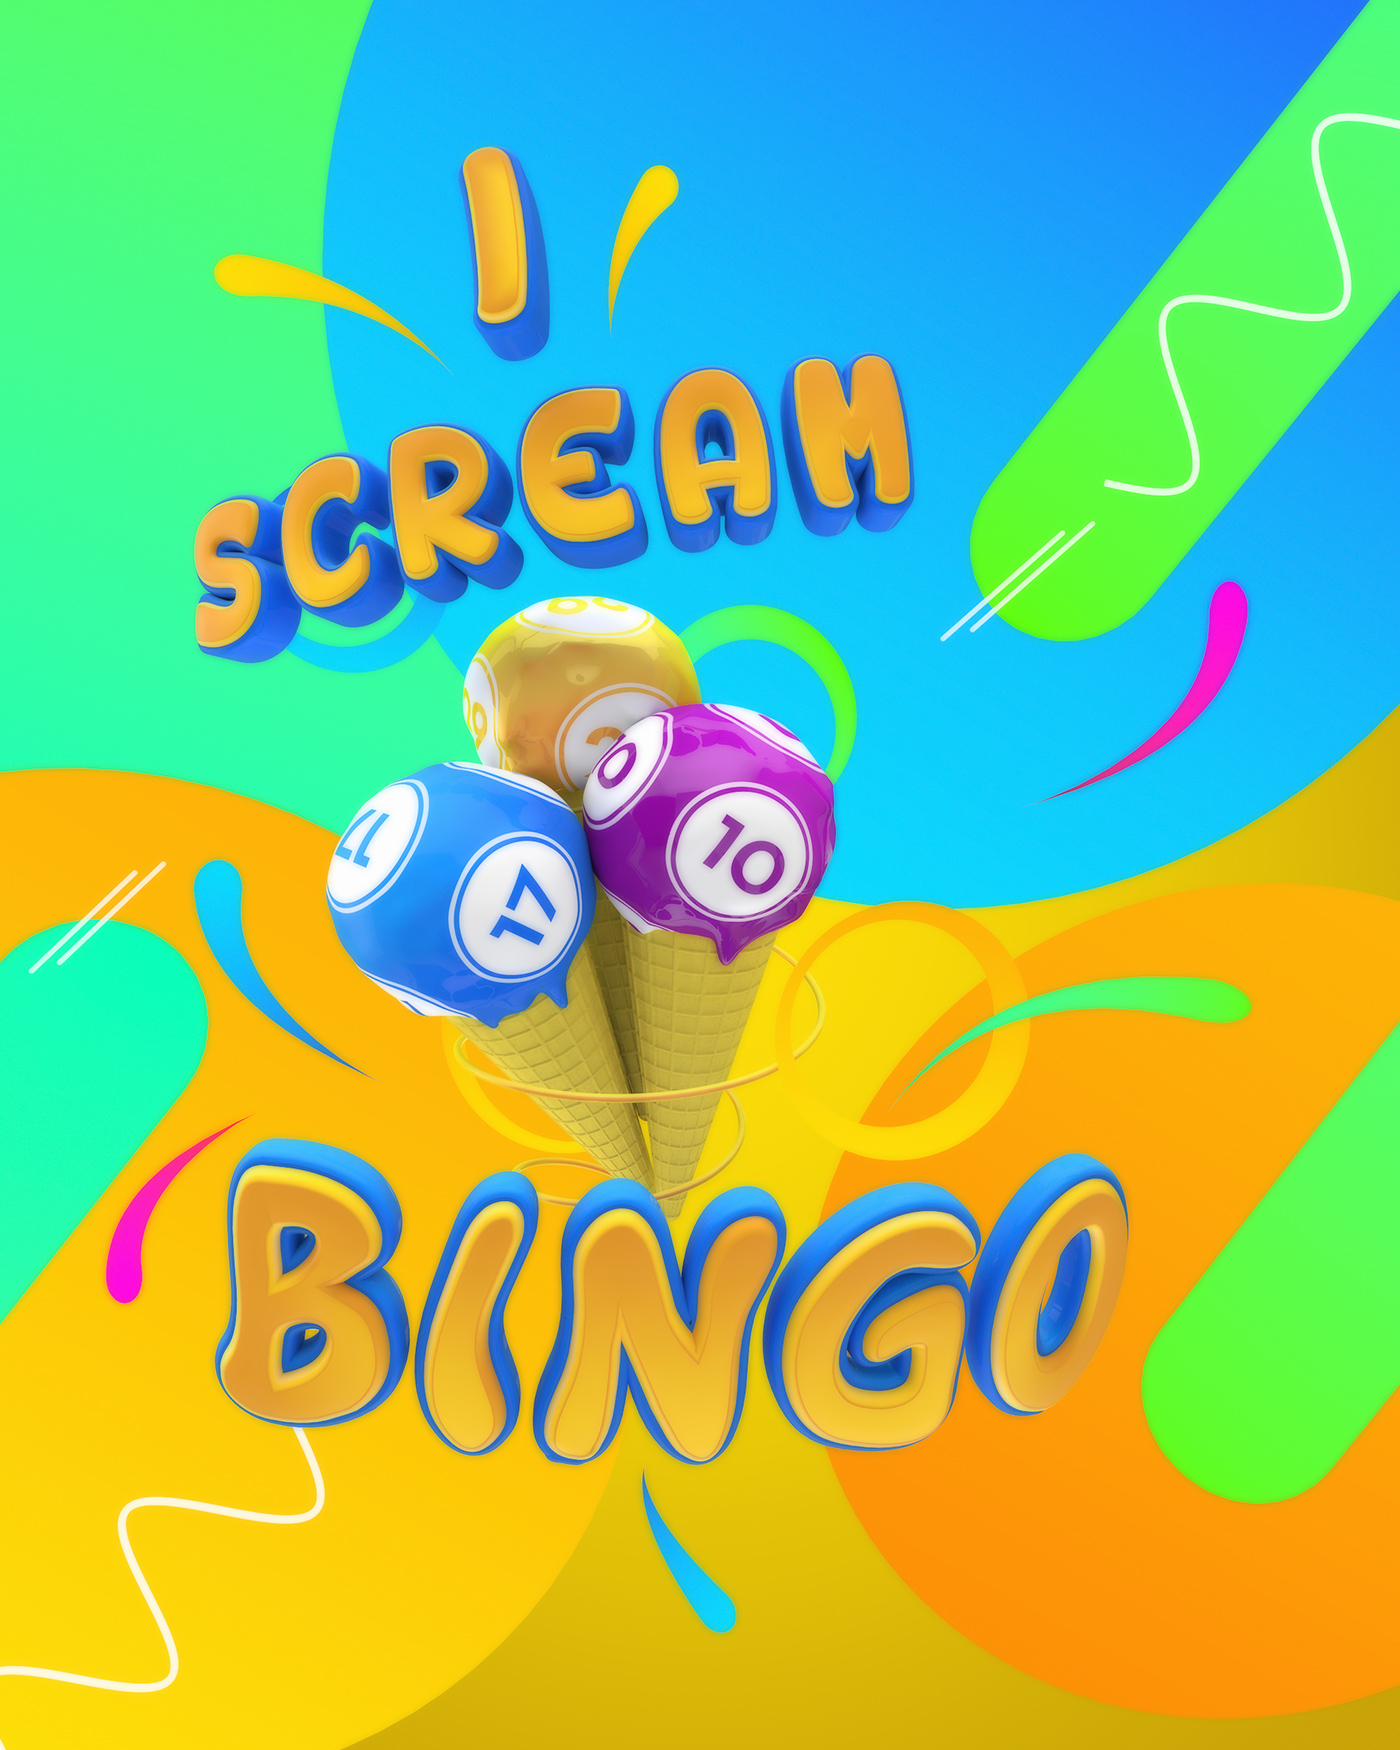 bingo icecream I Scream Chjus